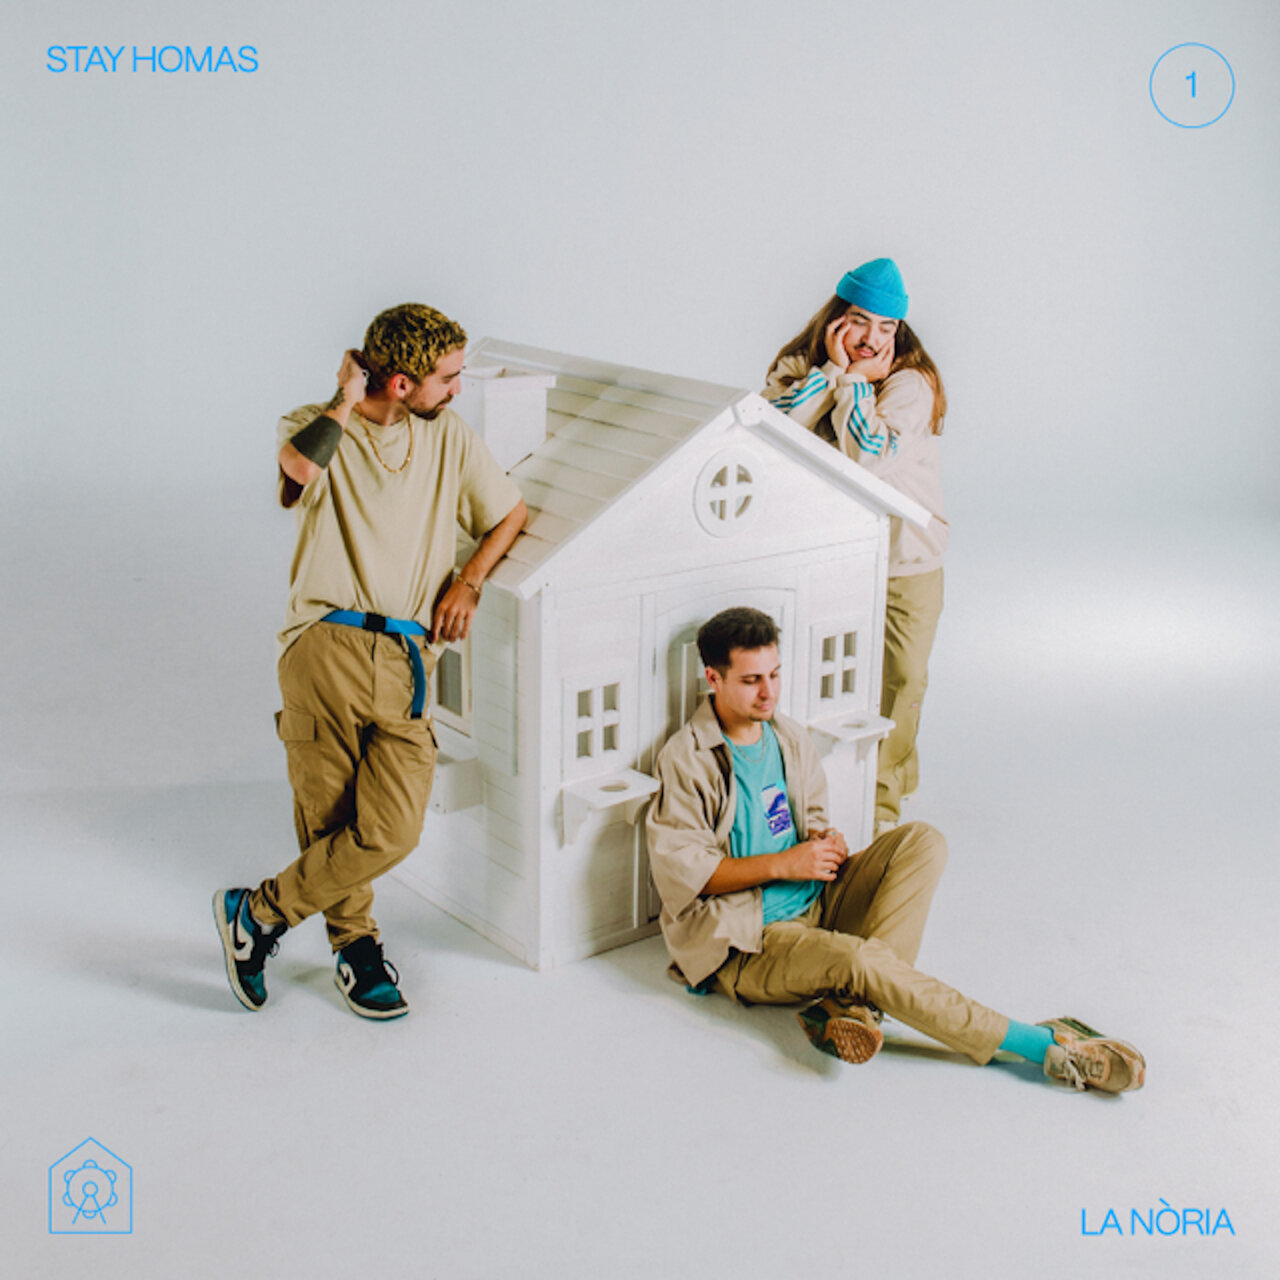 Stay Homas — LA NÒRIA cover artwork